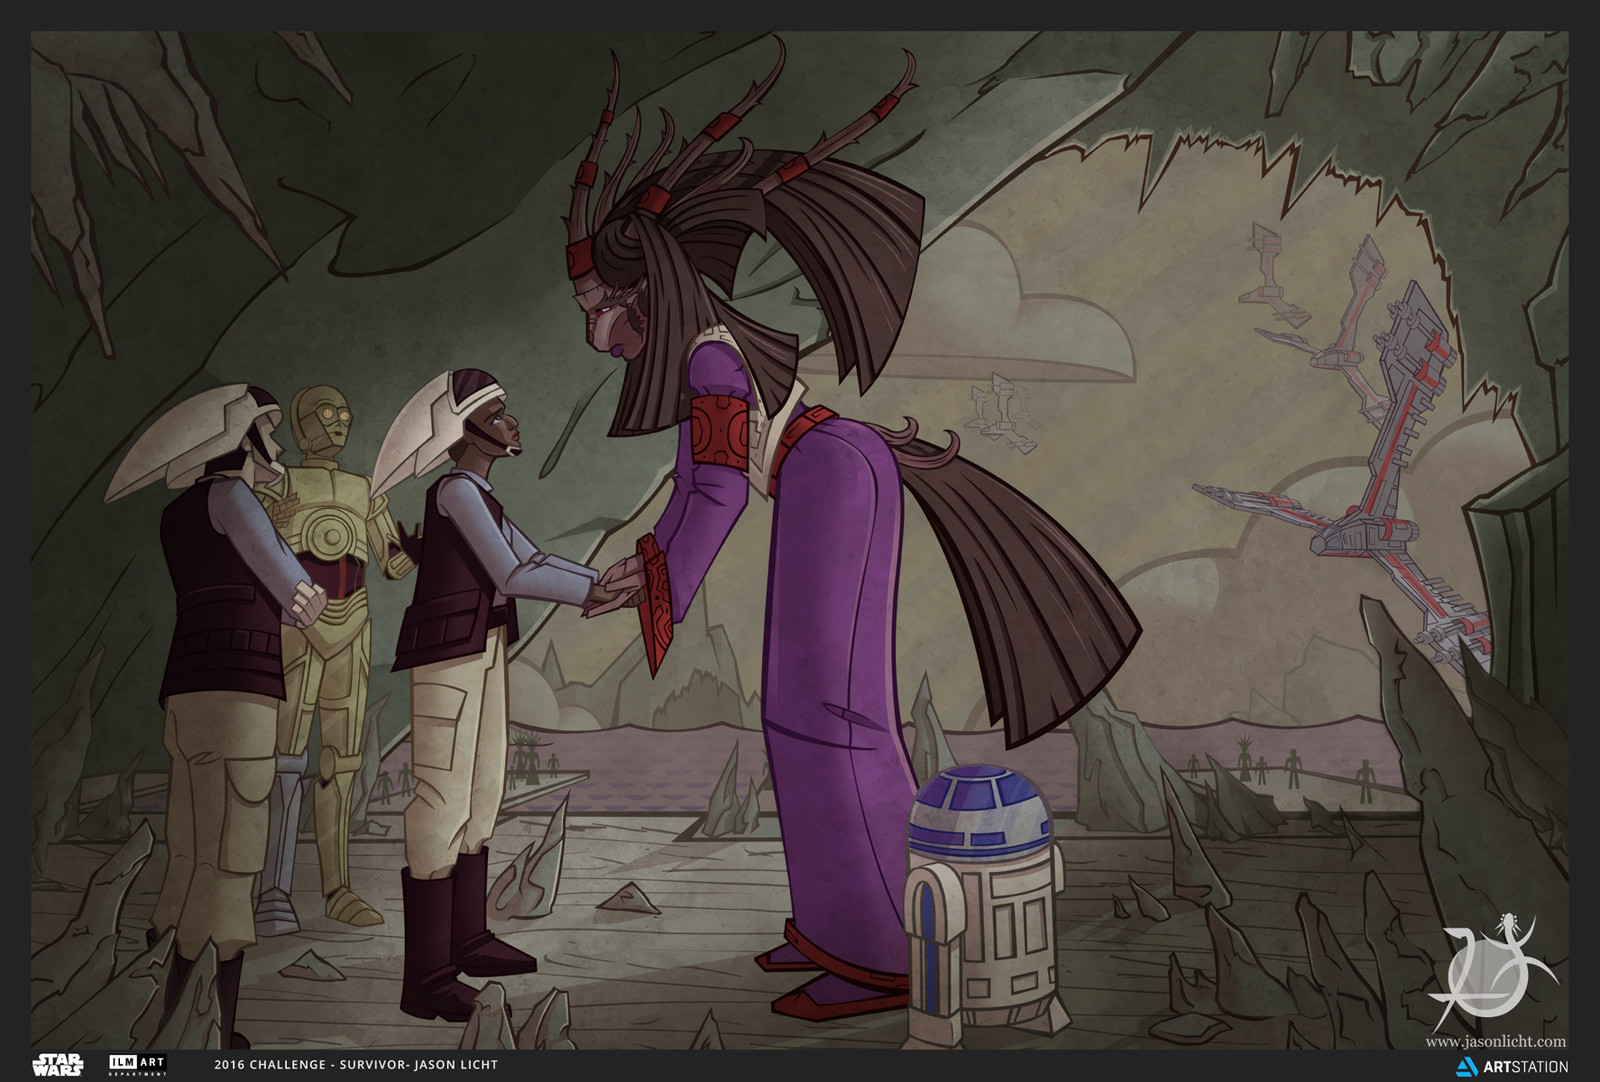 Rebel and Danji meeting in a  cavernous planet.